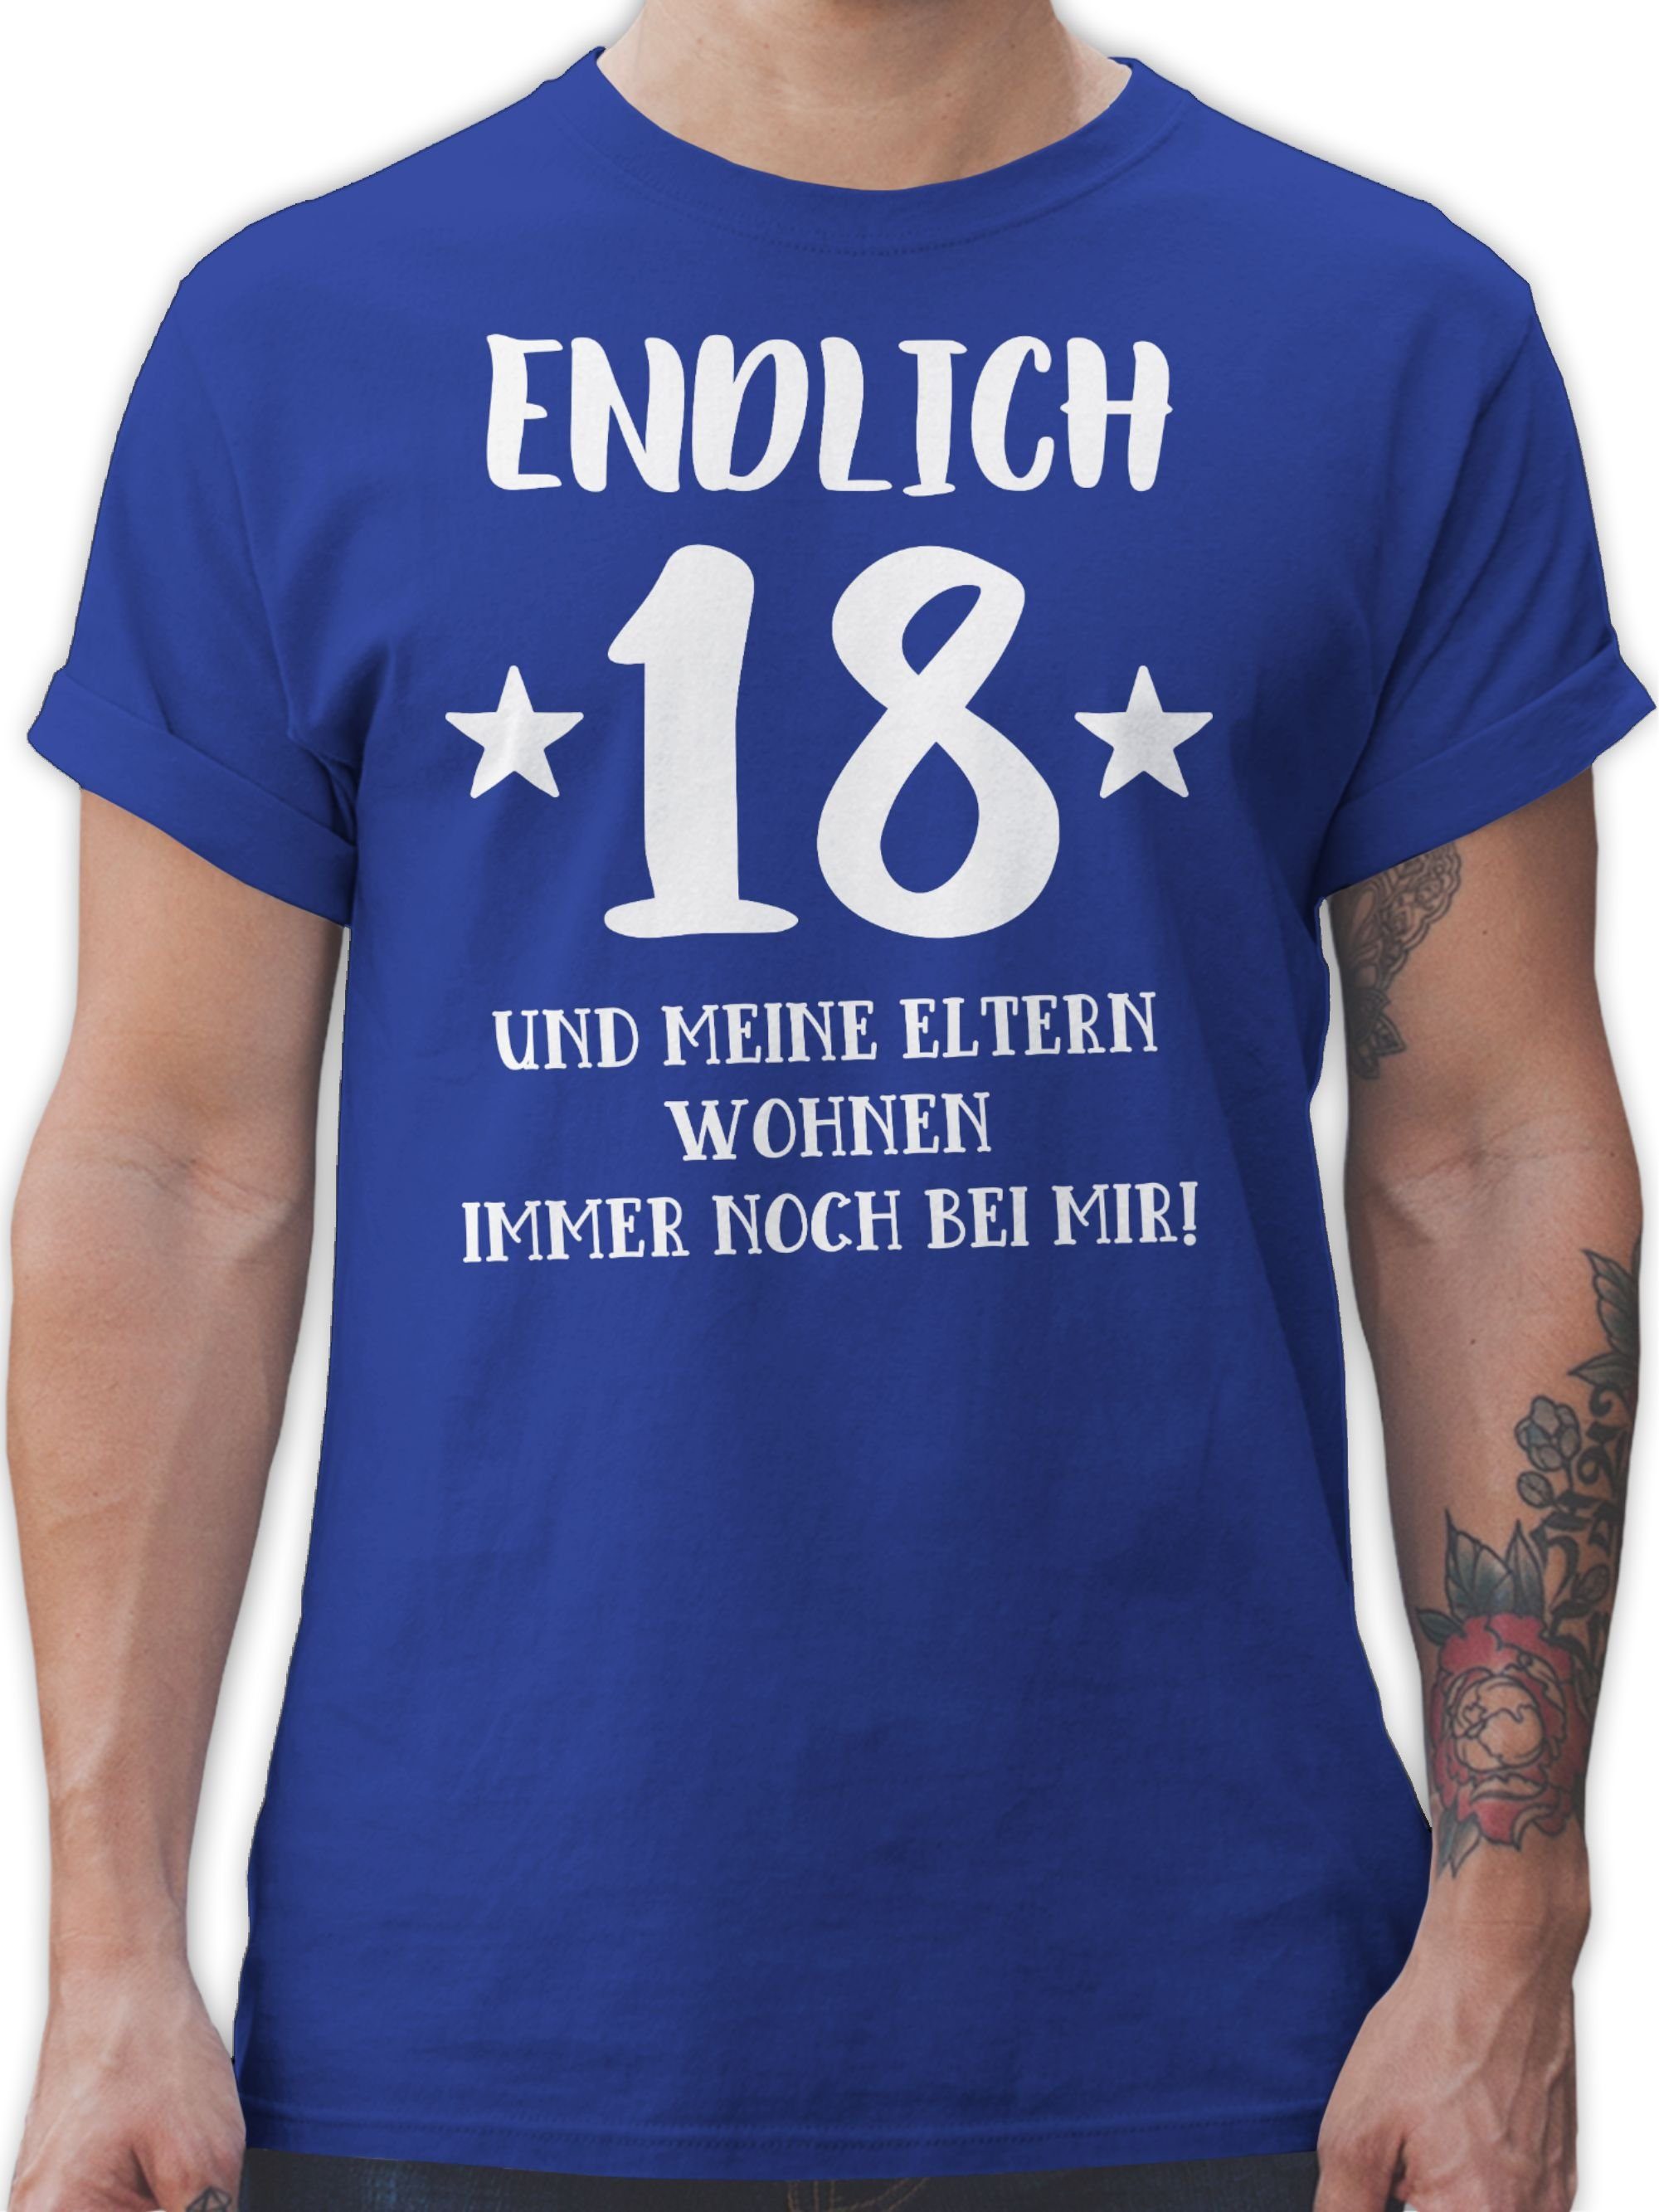 Shirtracer T-Shirt Endlich achtzehn - Eltern Wohnen bei mir 18. Geburtstag 3 Royalblau